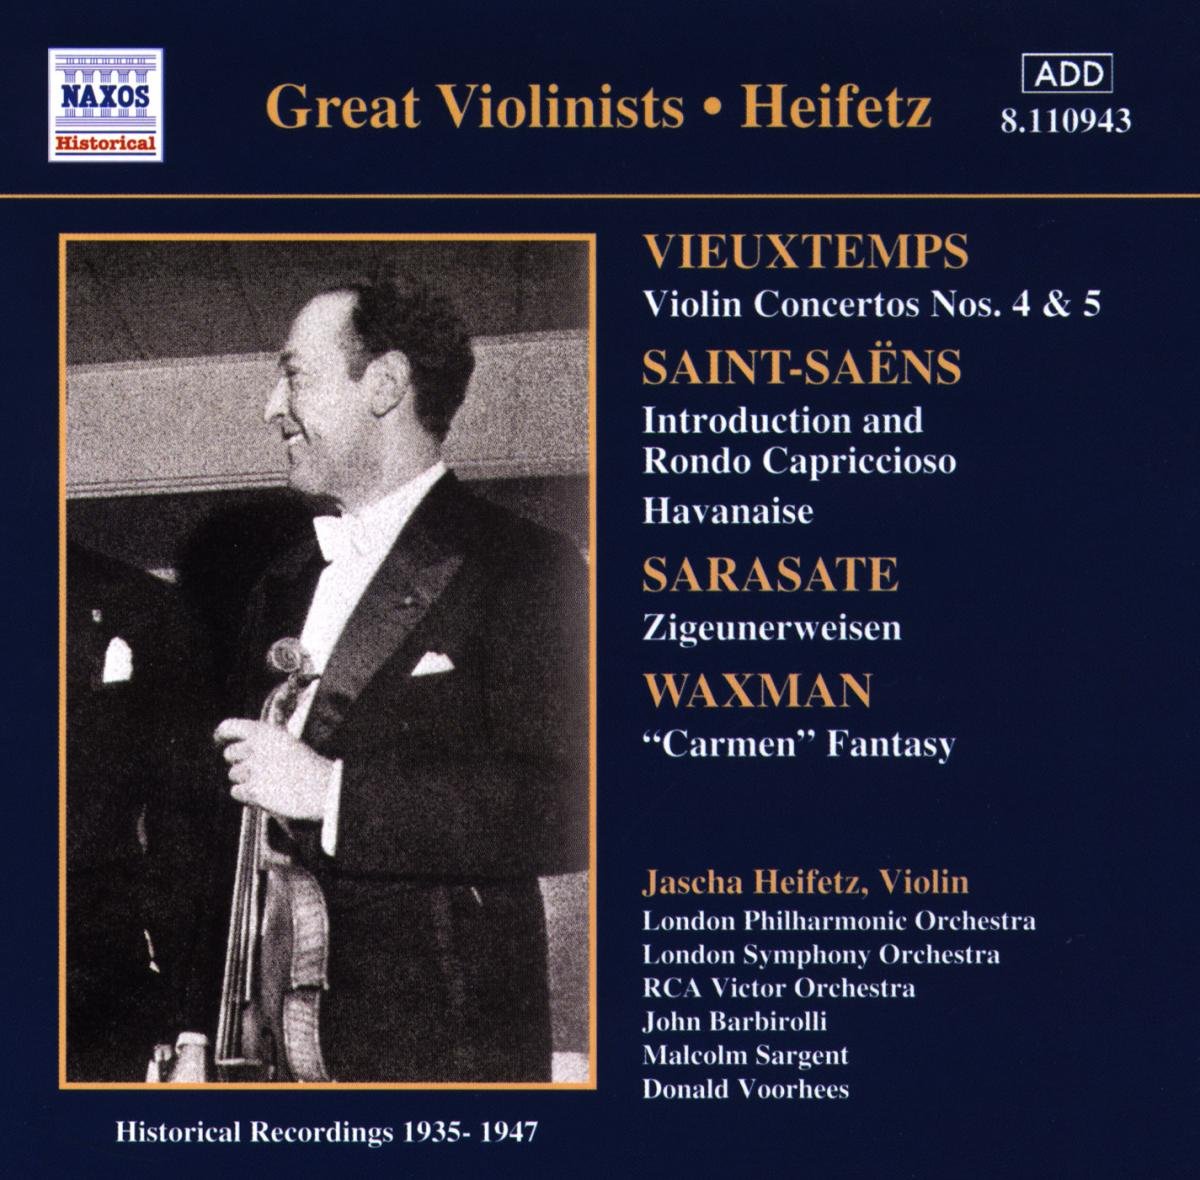 Vieuxtemps: Violin Concertos Nos. 4 and 5 / Saint-Saens / Sarasate / Waxman